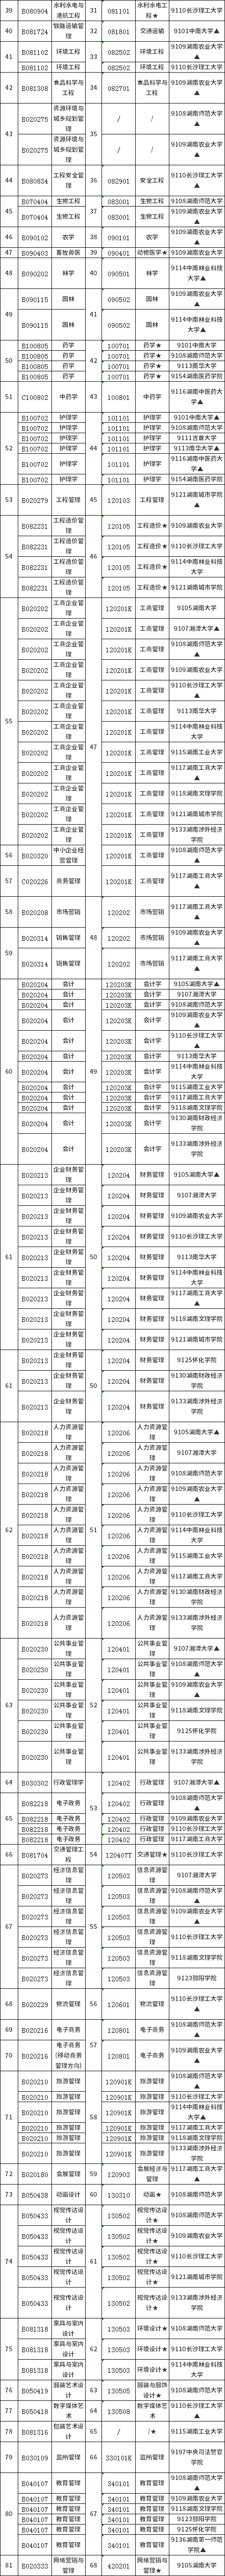 湖南省2021年高等教育自学考试(本科)开考专业